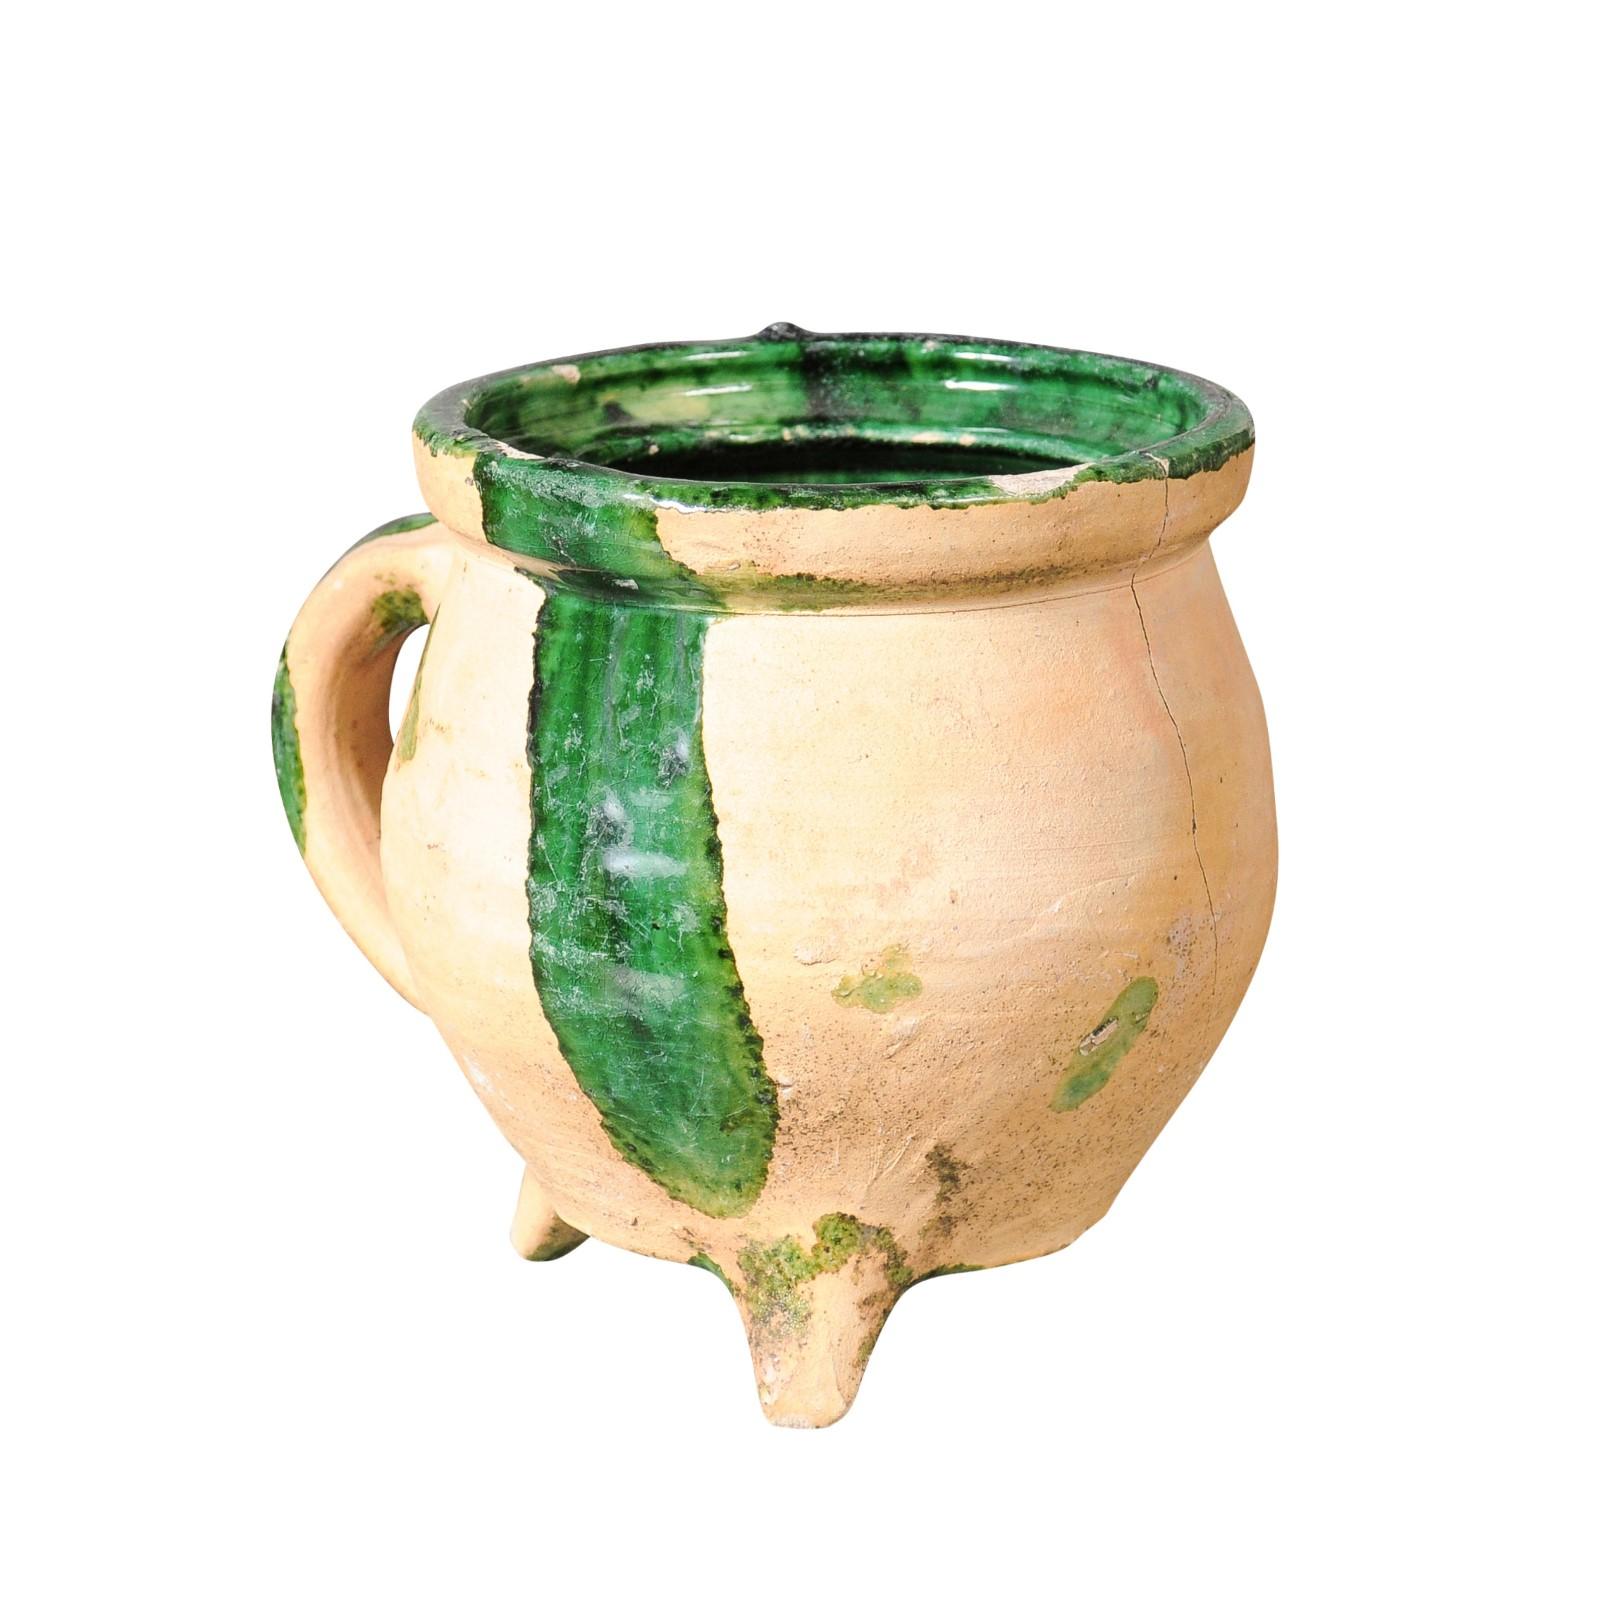 Ein Kochtopf aus französischer Provinzial-Keramik aus dem 19. Jahrhundert mit grün glasierten Akzenten, geformtem Henkel und Dreibeinfuß. Dieser im 19. Jahrhundert in Südfrankreich hergestellte Kochtopf hat eine runde Öffnung, die mit einer grünen